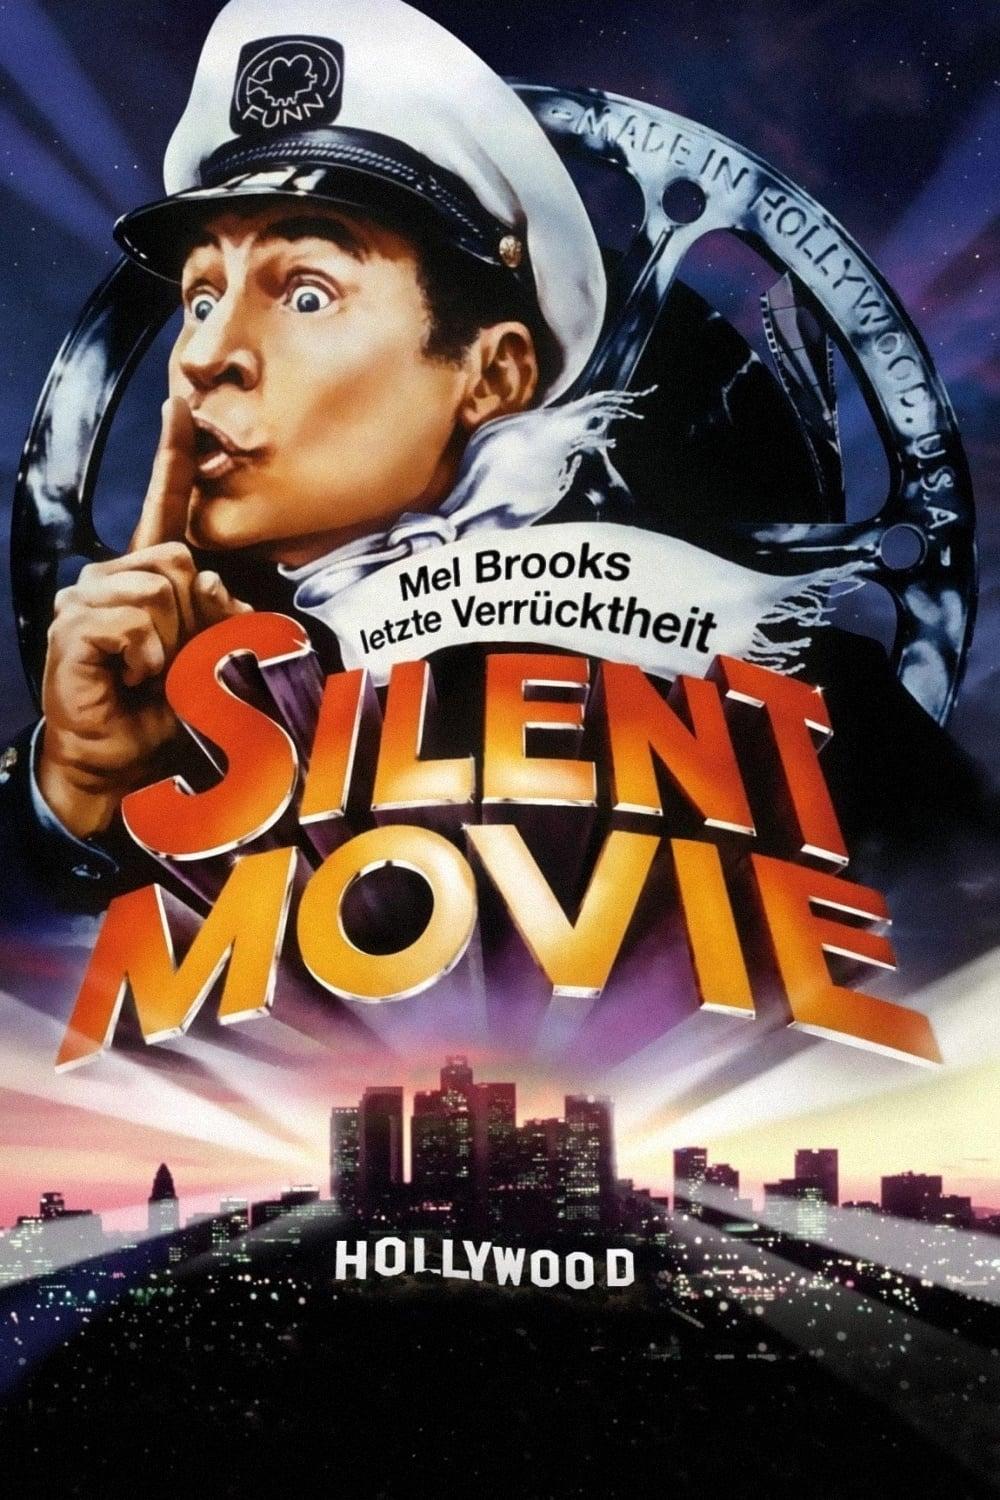 Mel Brooks' letzte Verrücktheit: Silent Movie poster